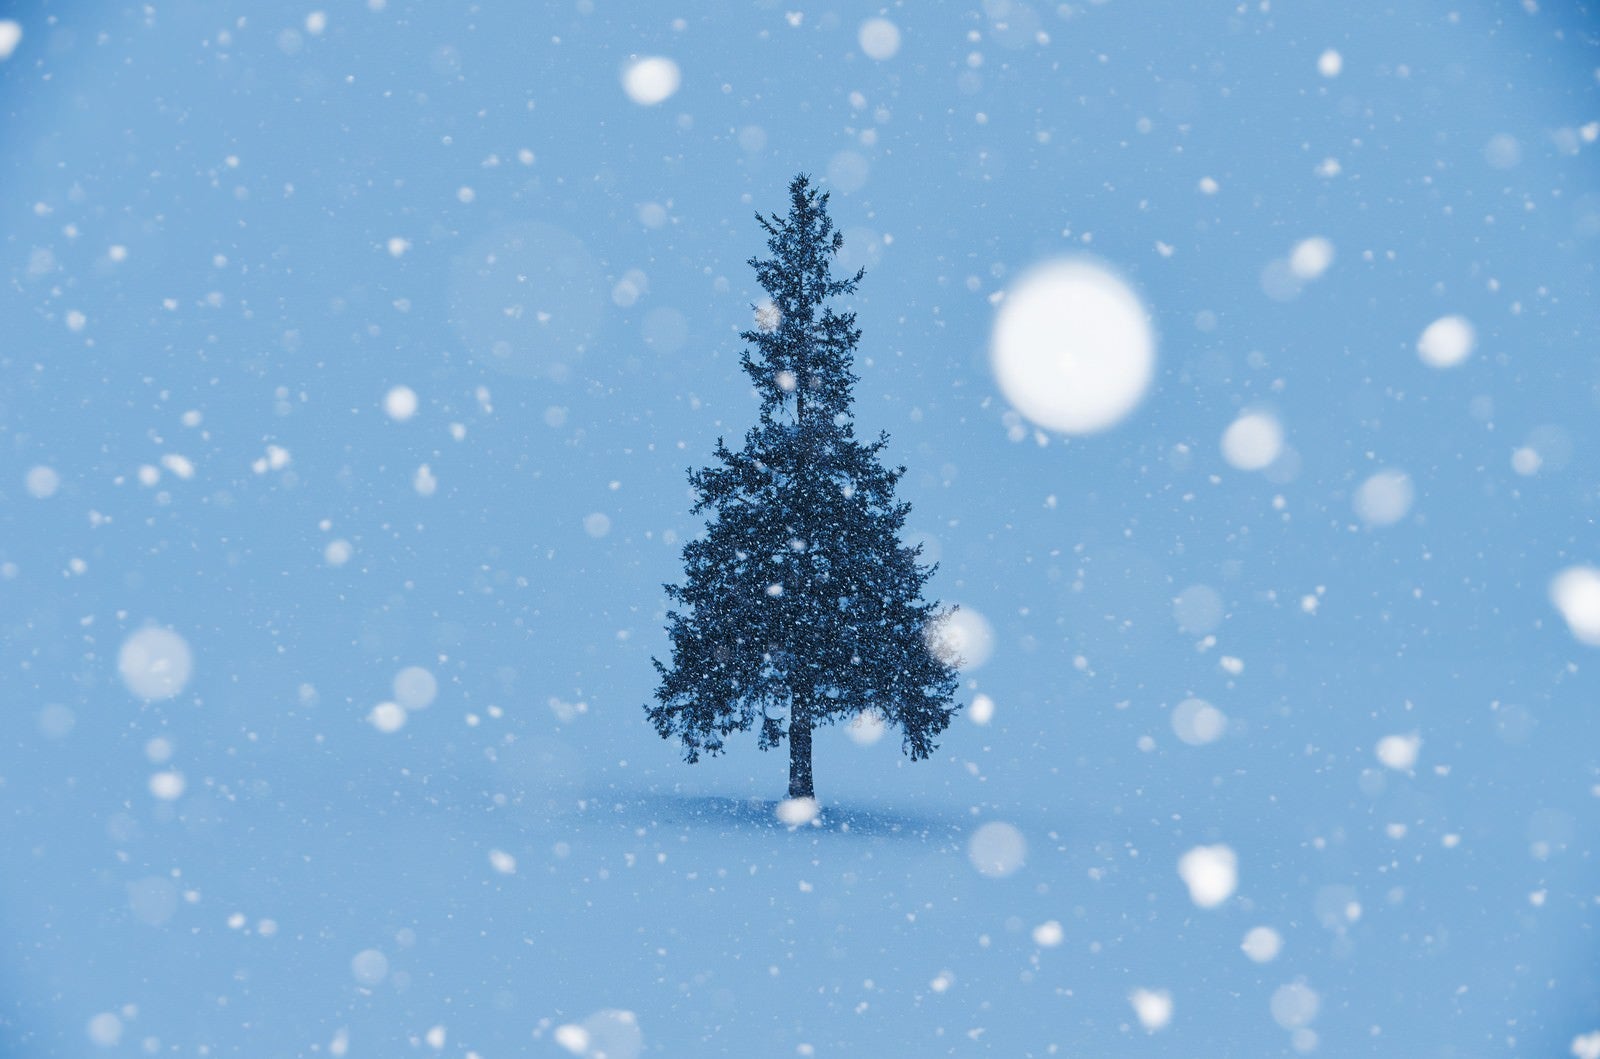 「雪降るクリスマスツリー」の写真